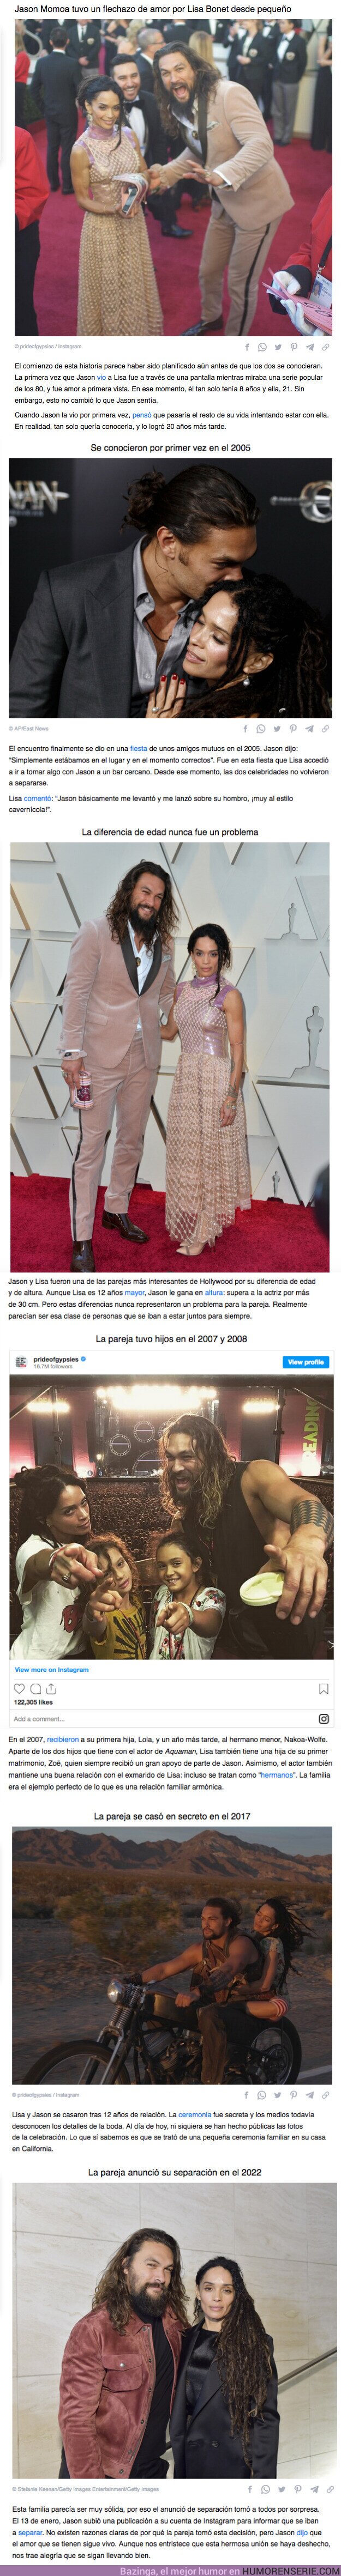 91316 - GALERÍA: La historia de amor de Lisa Bonet y Jason Momoa, que anunciaron su divorcio después de 16 años juntos